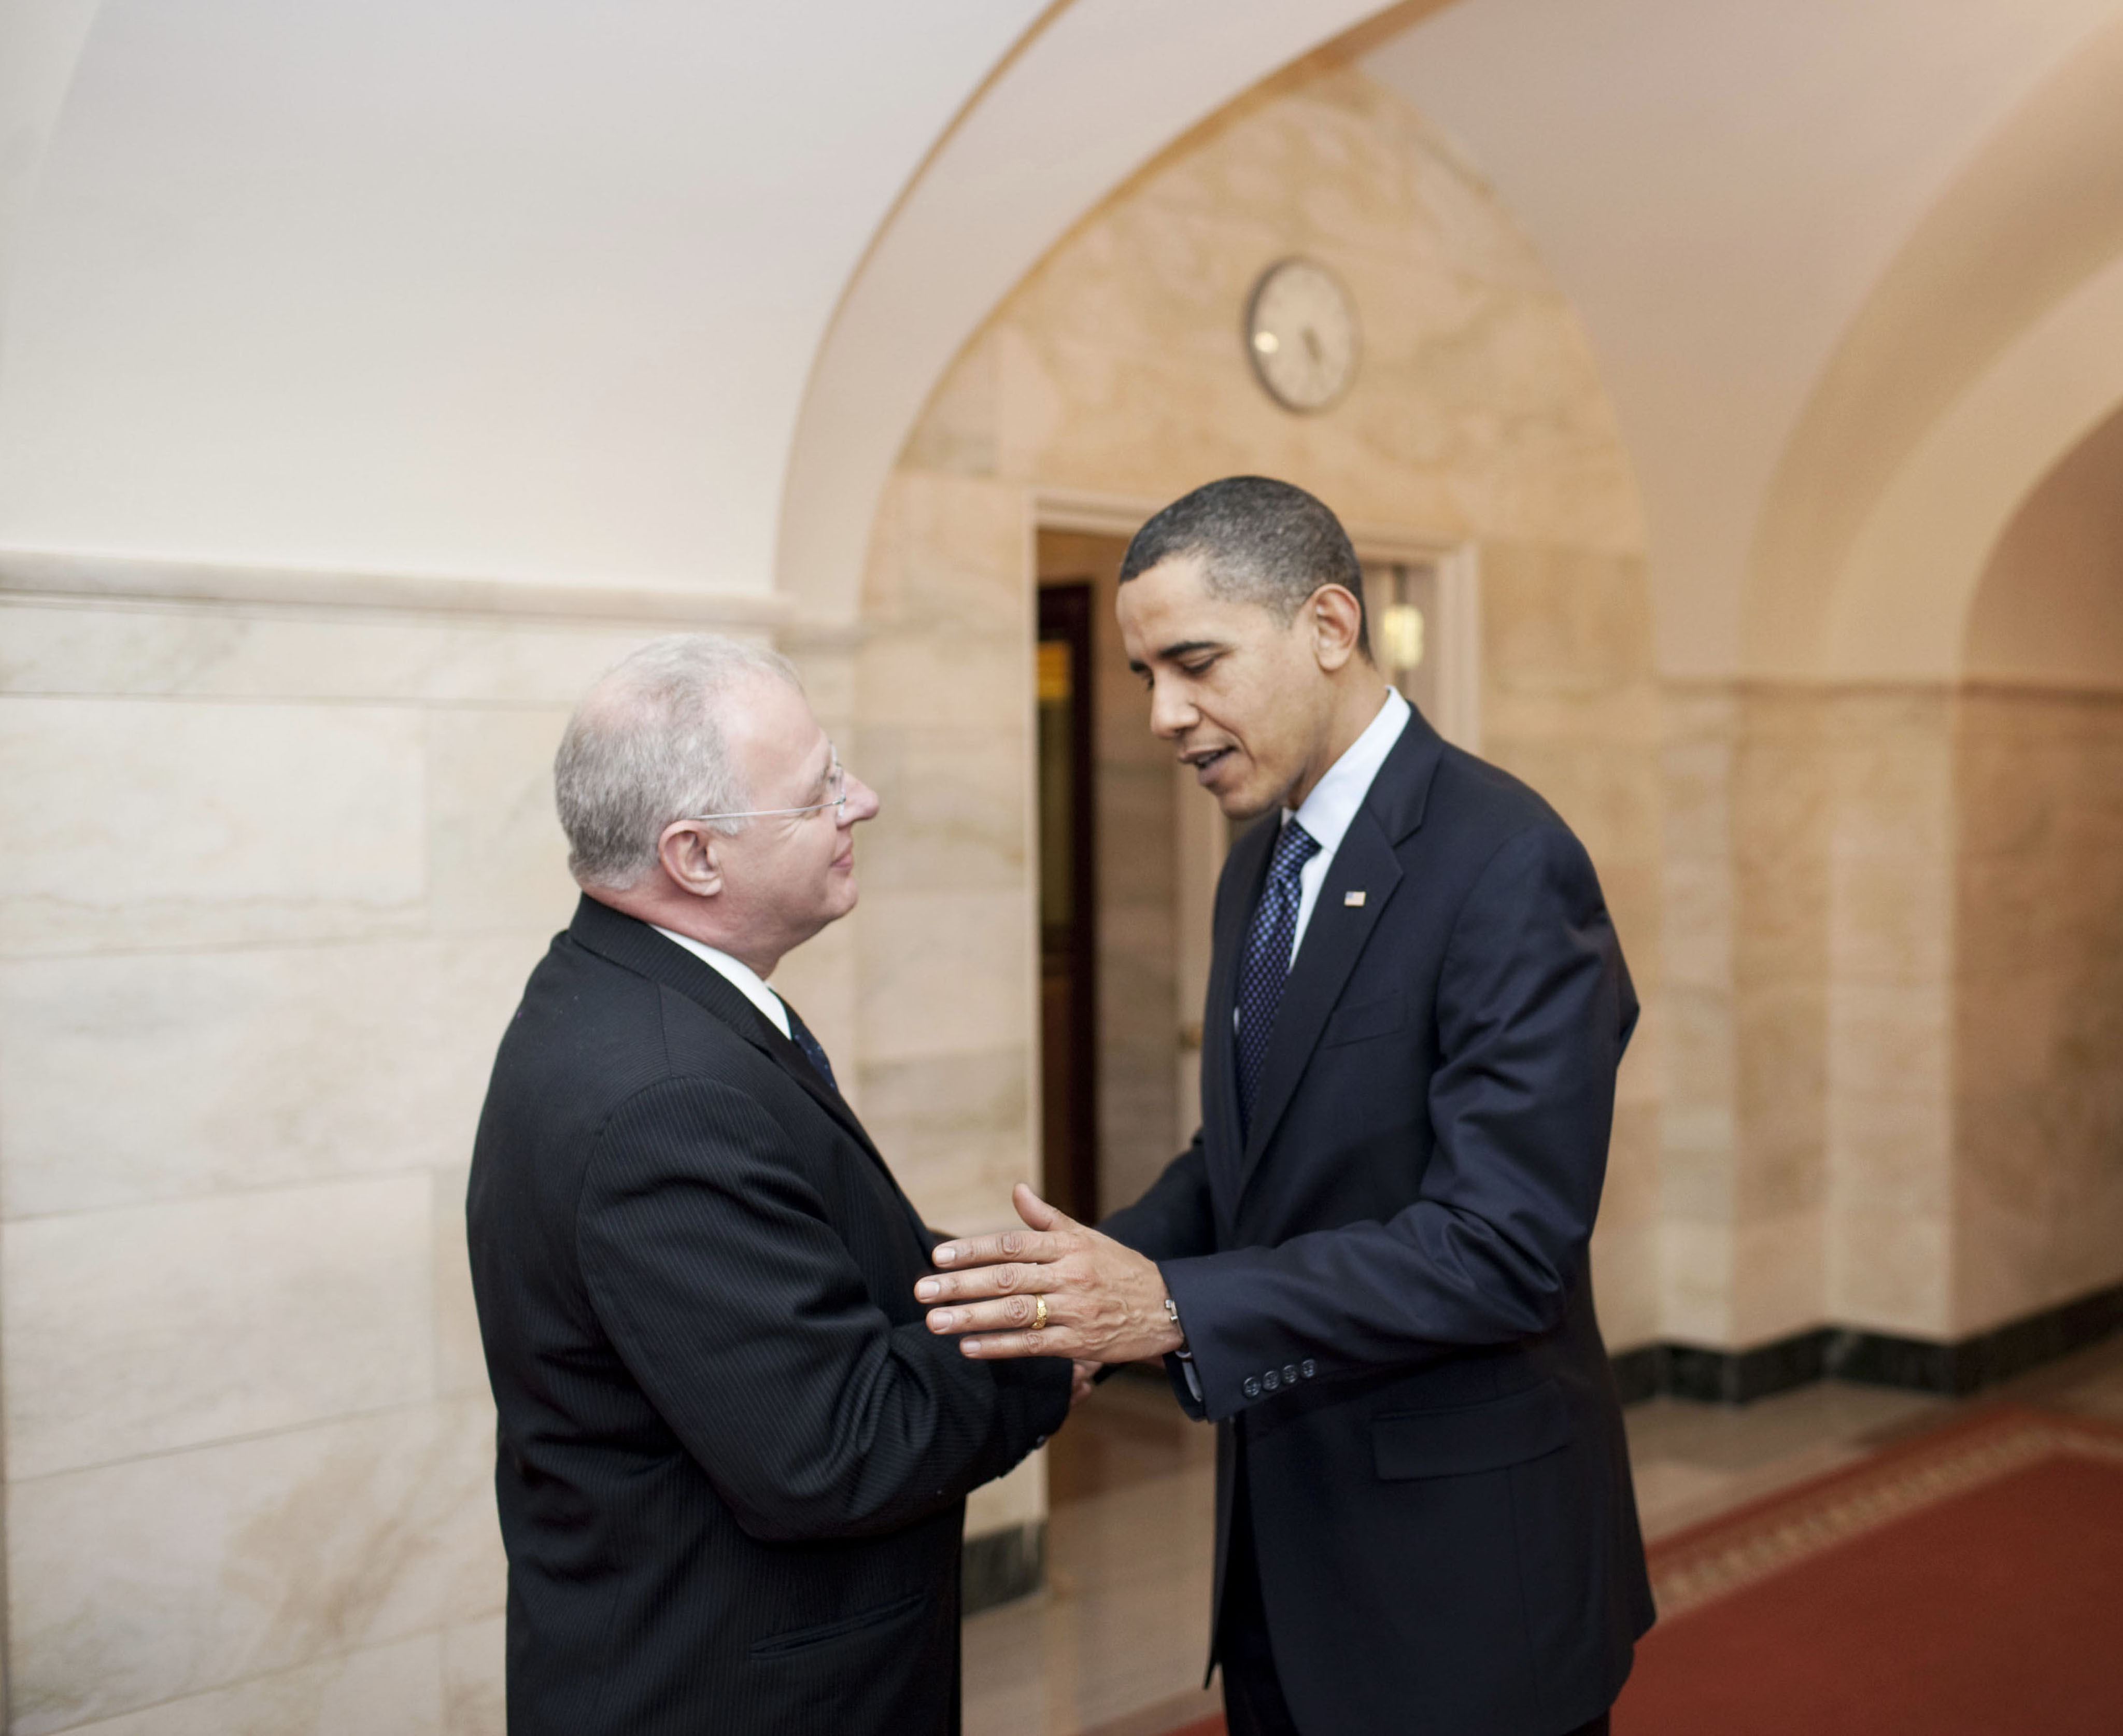 Howard Schmidt and Barack Obama